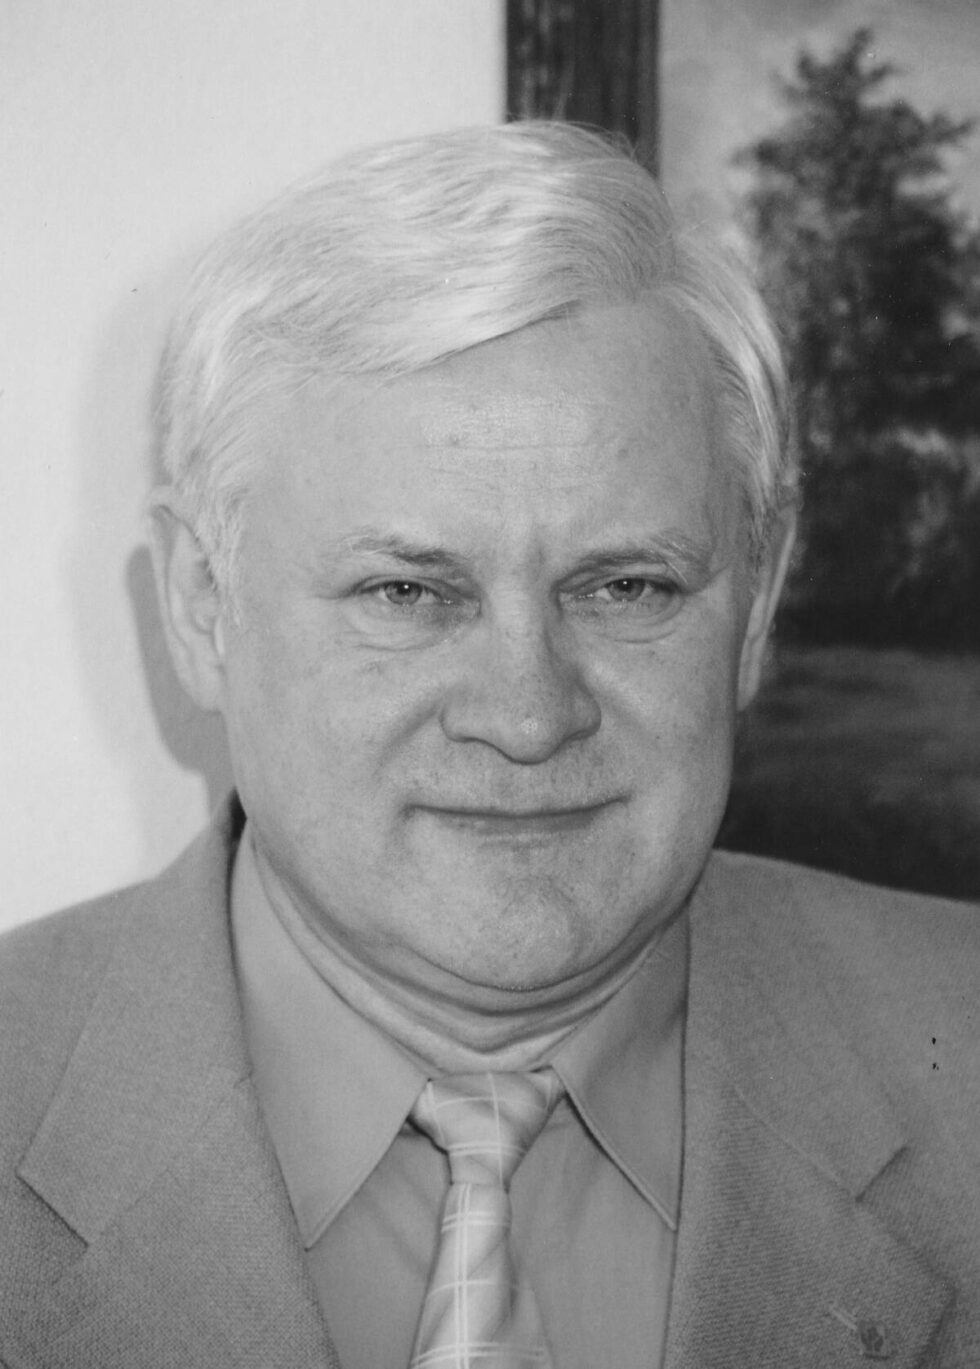 Odszedł wieloletni dyrektor bydgoskiego Zachemu. Przemysław Nawracała zmarł w wieku 76 lat